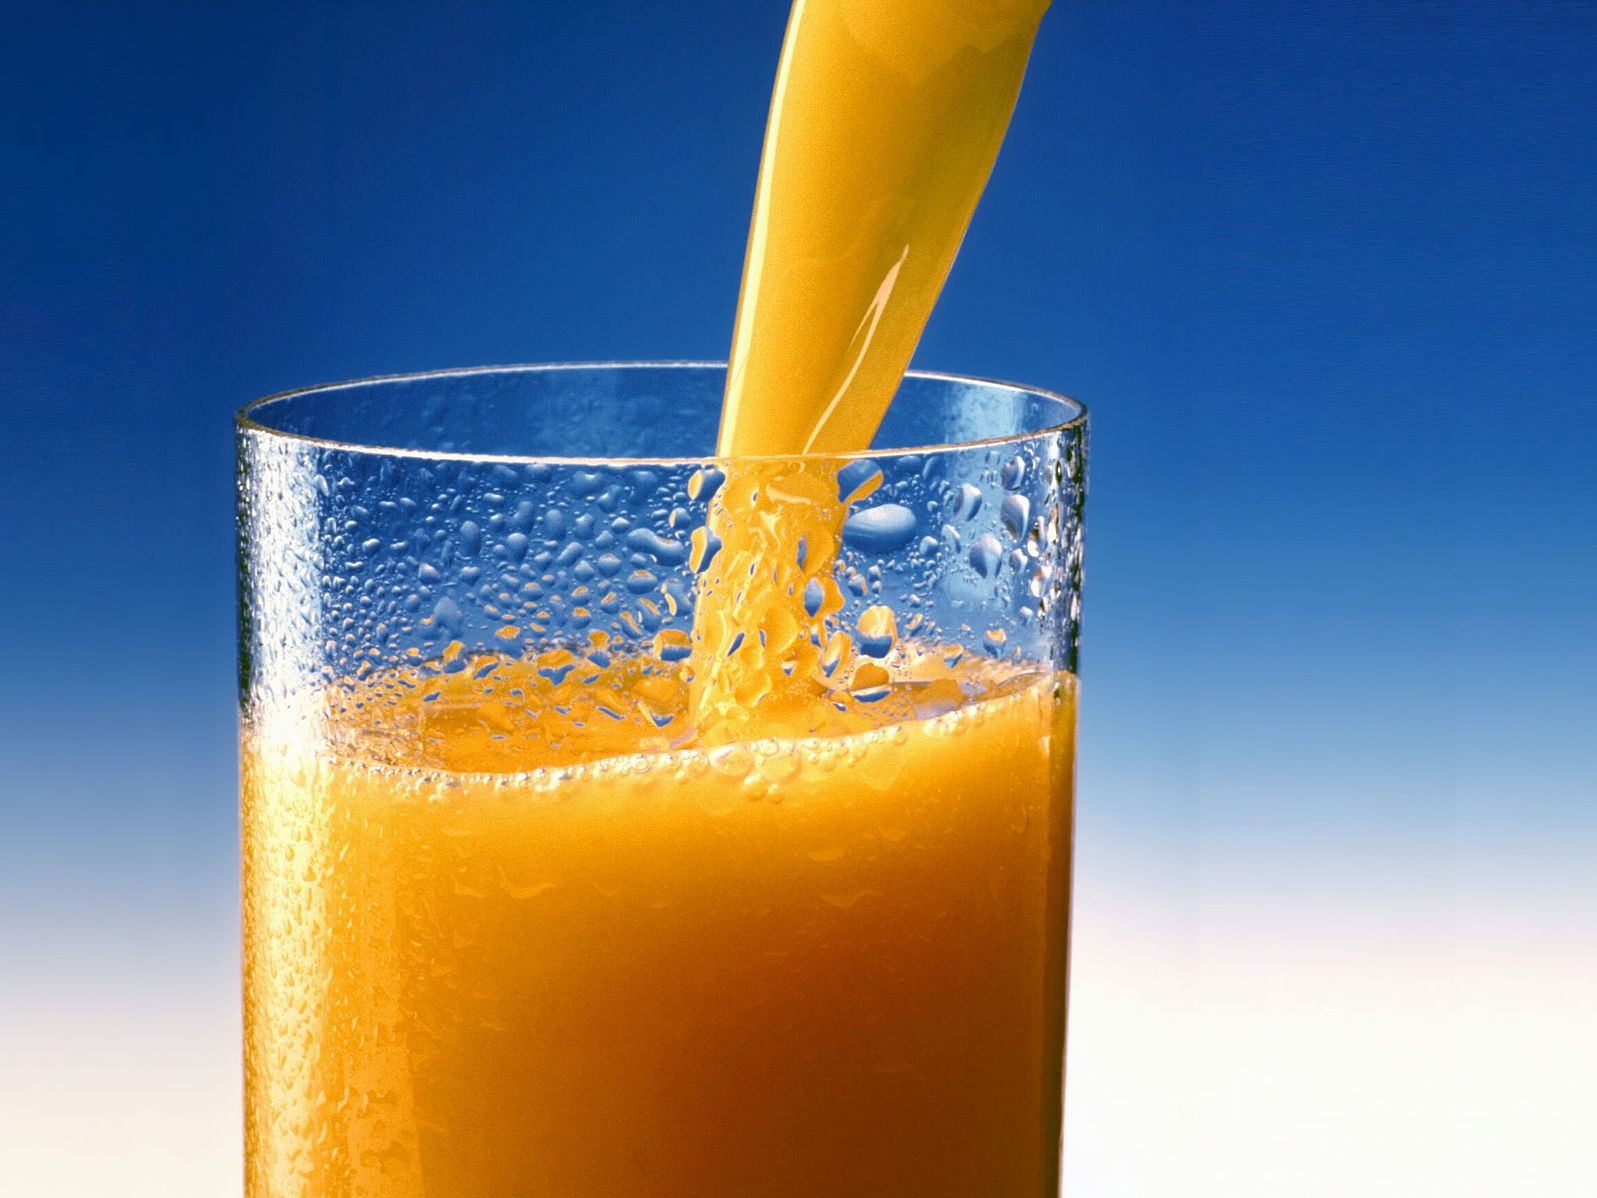 Стакан апельсинового сока в руке